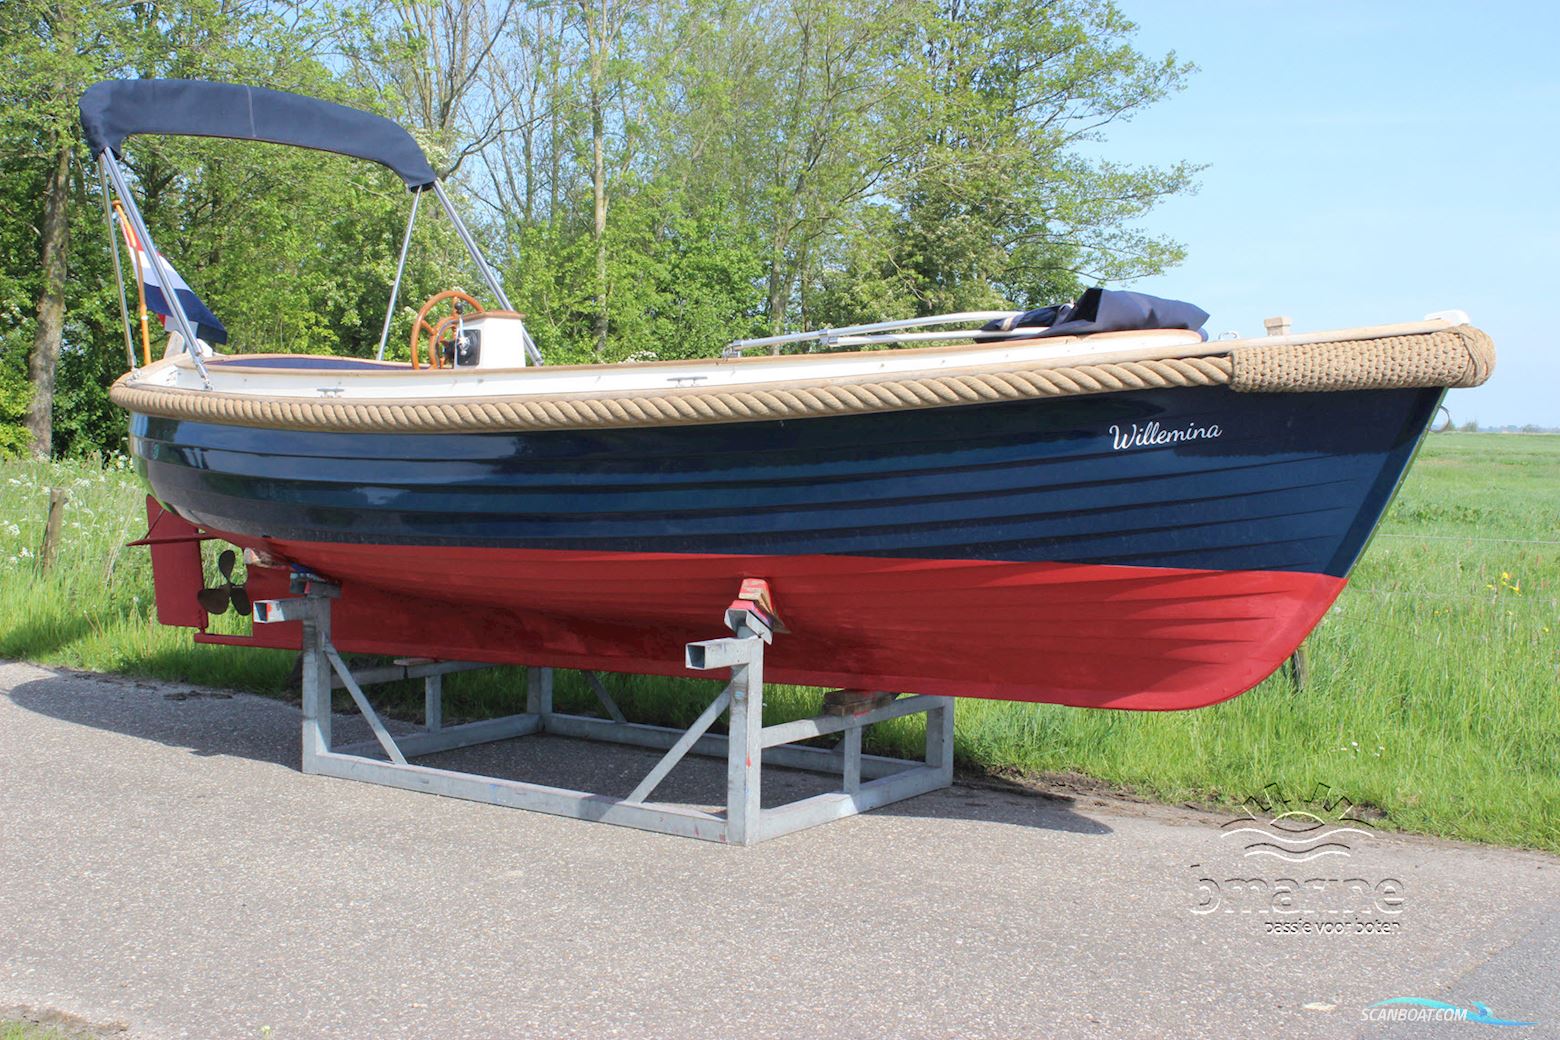 Menken Maritiem Piet Hein Sloep Motorbåt 2001, med Vetus motor, Holland